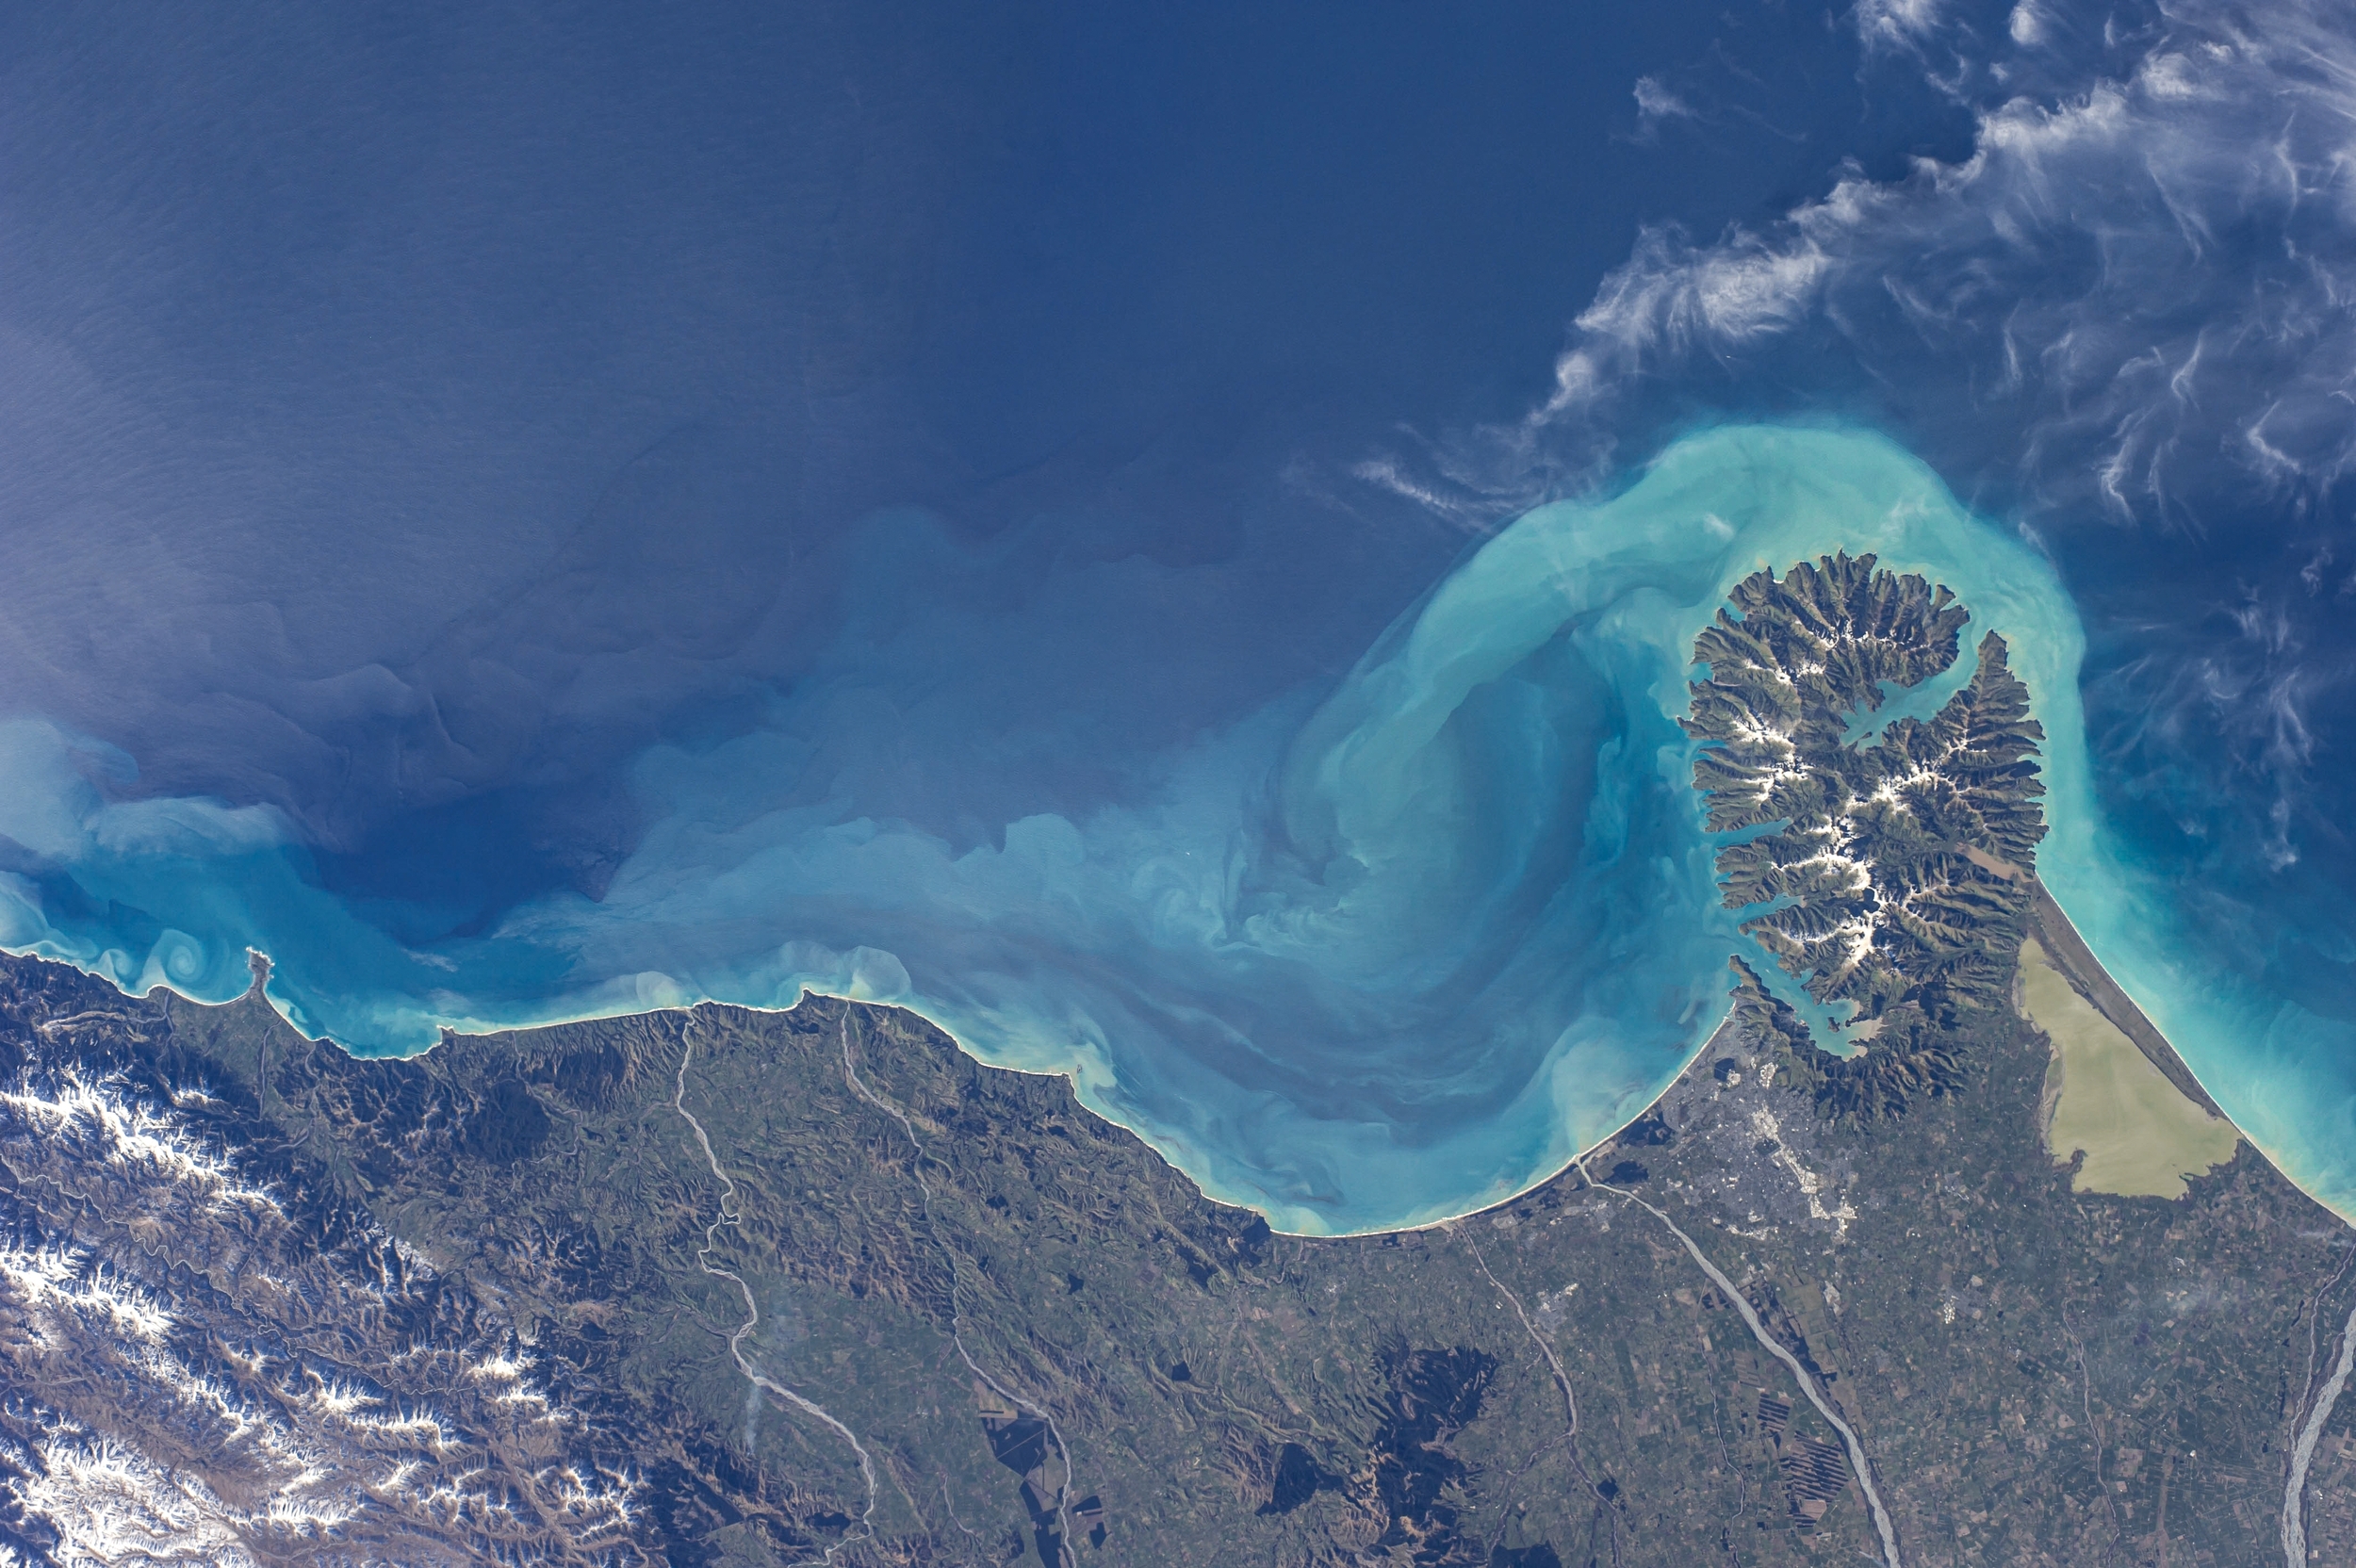 Les océans sont de véritables zones industrielles, comme en témoignent les images satellites et l'intelligence artificielle